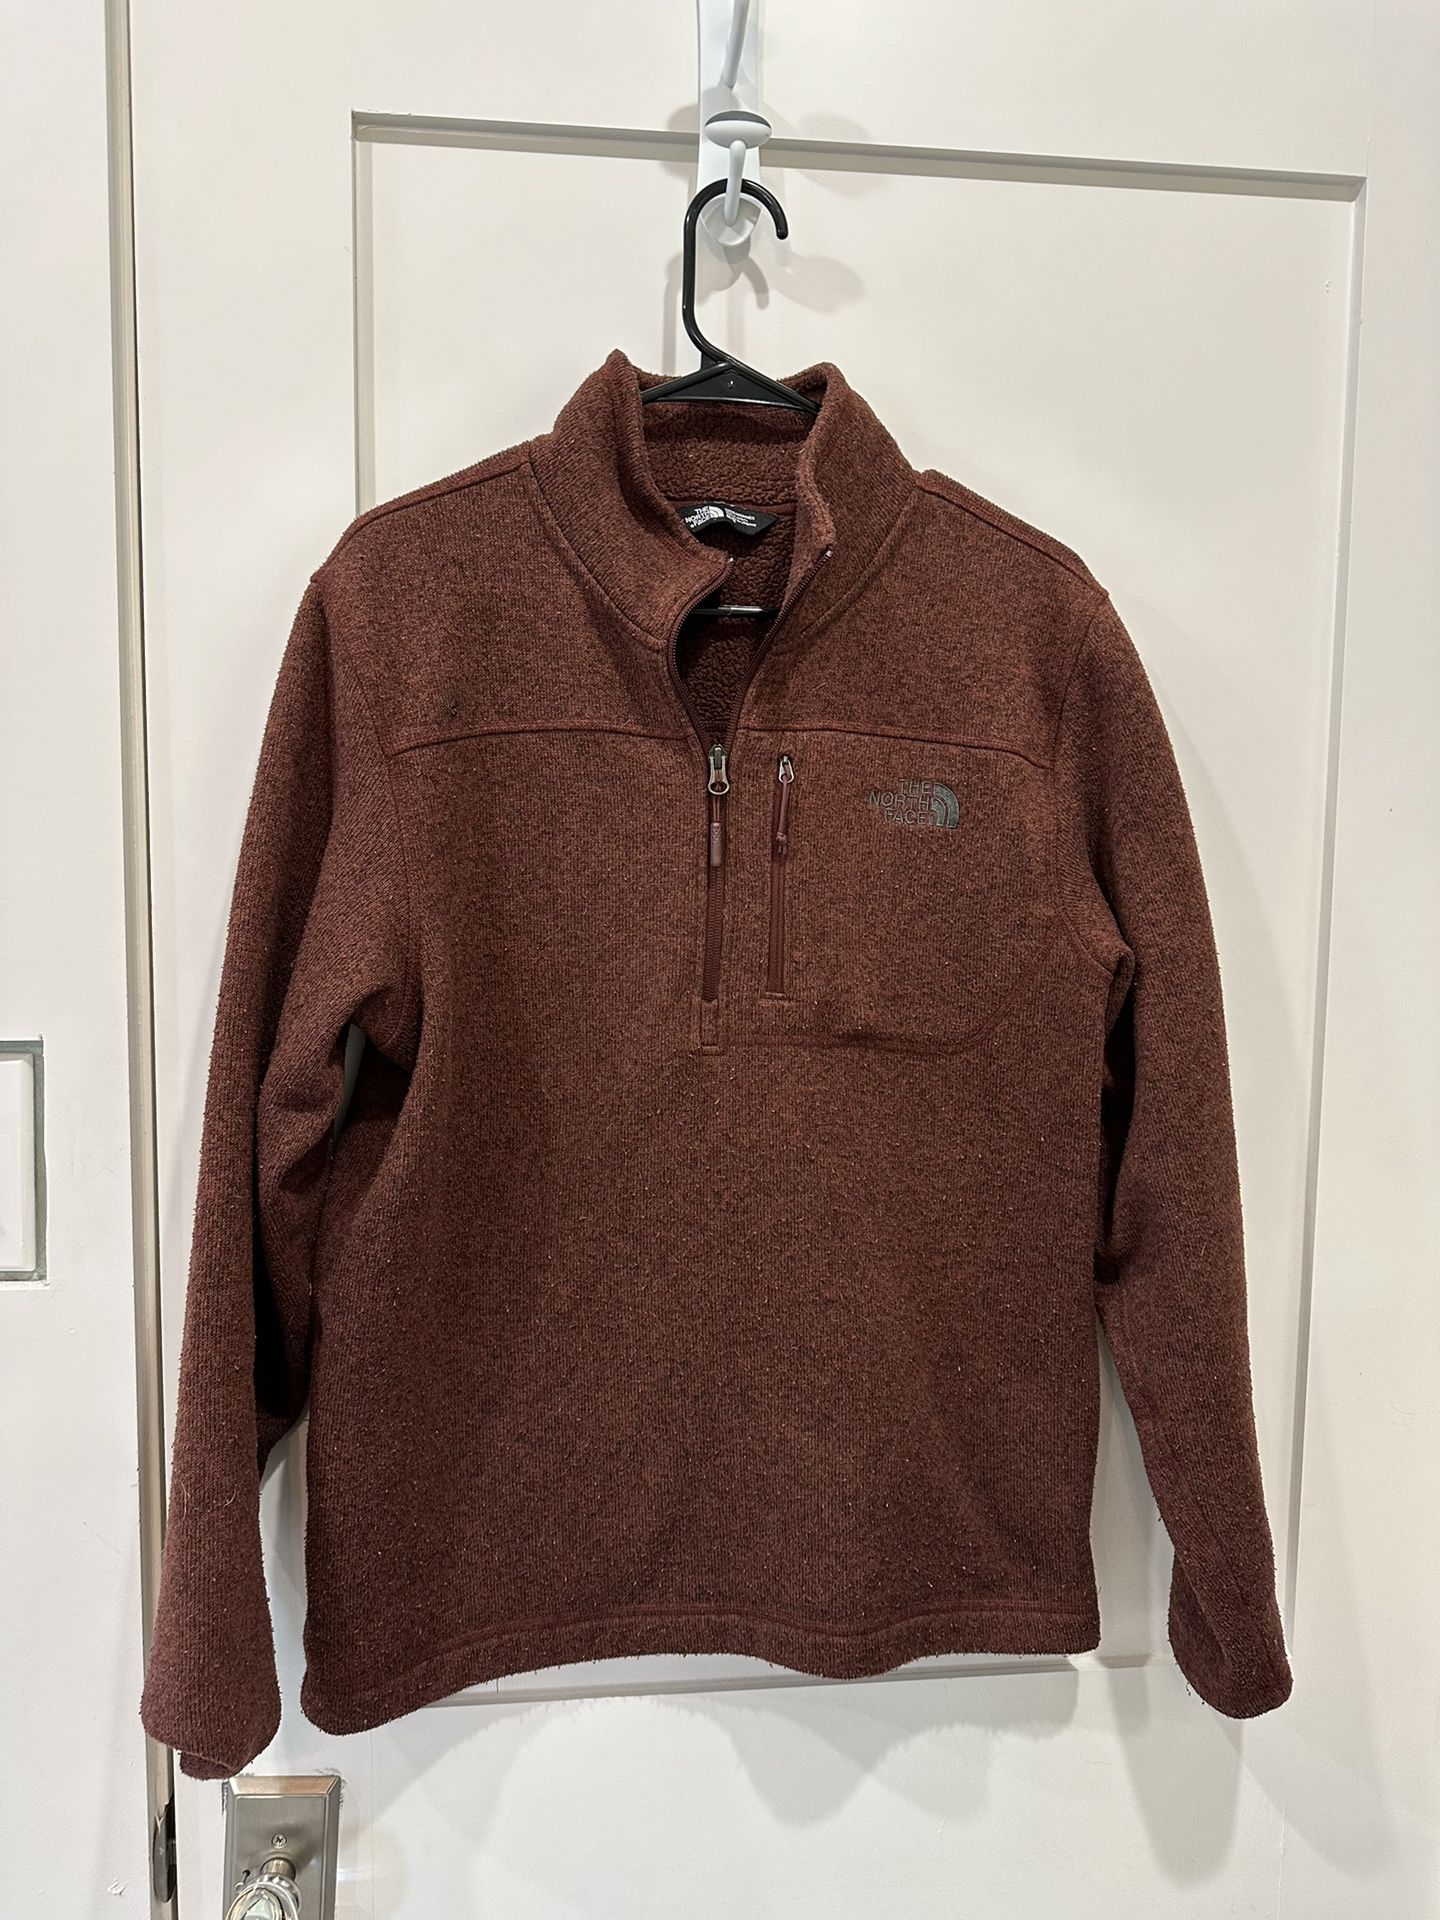 Men’s The North Face Fleece 1/4 Zip Pullover Jacket/Coat, Maroon, Size Medium (M)